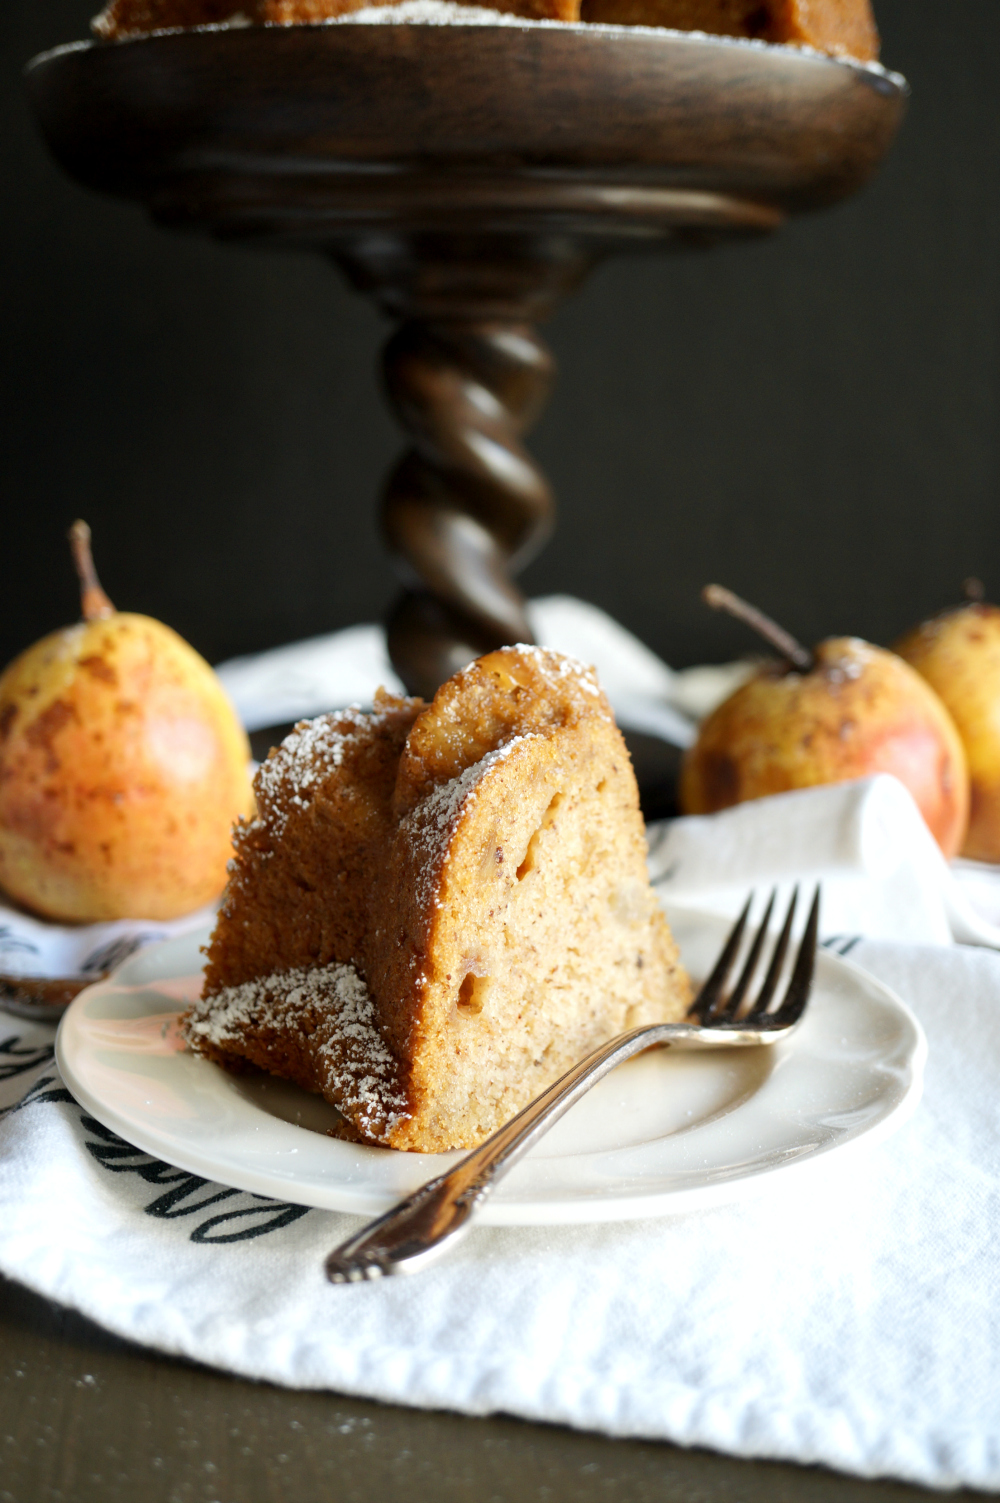 vegan ginger pear bundt cake | The Baking Fairy #FallFlavors